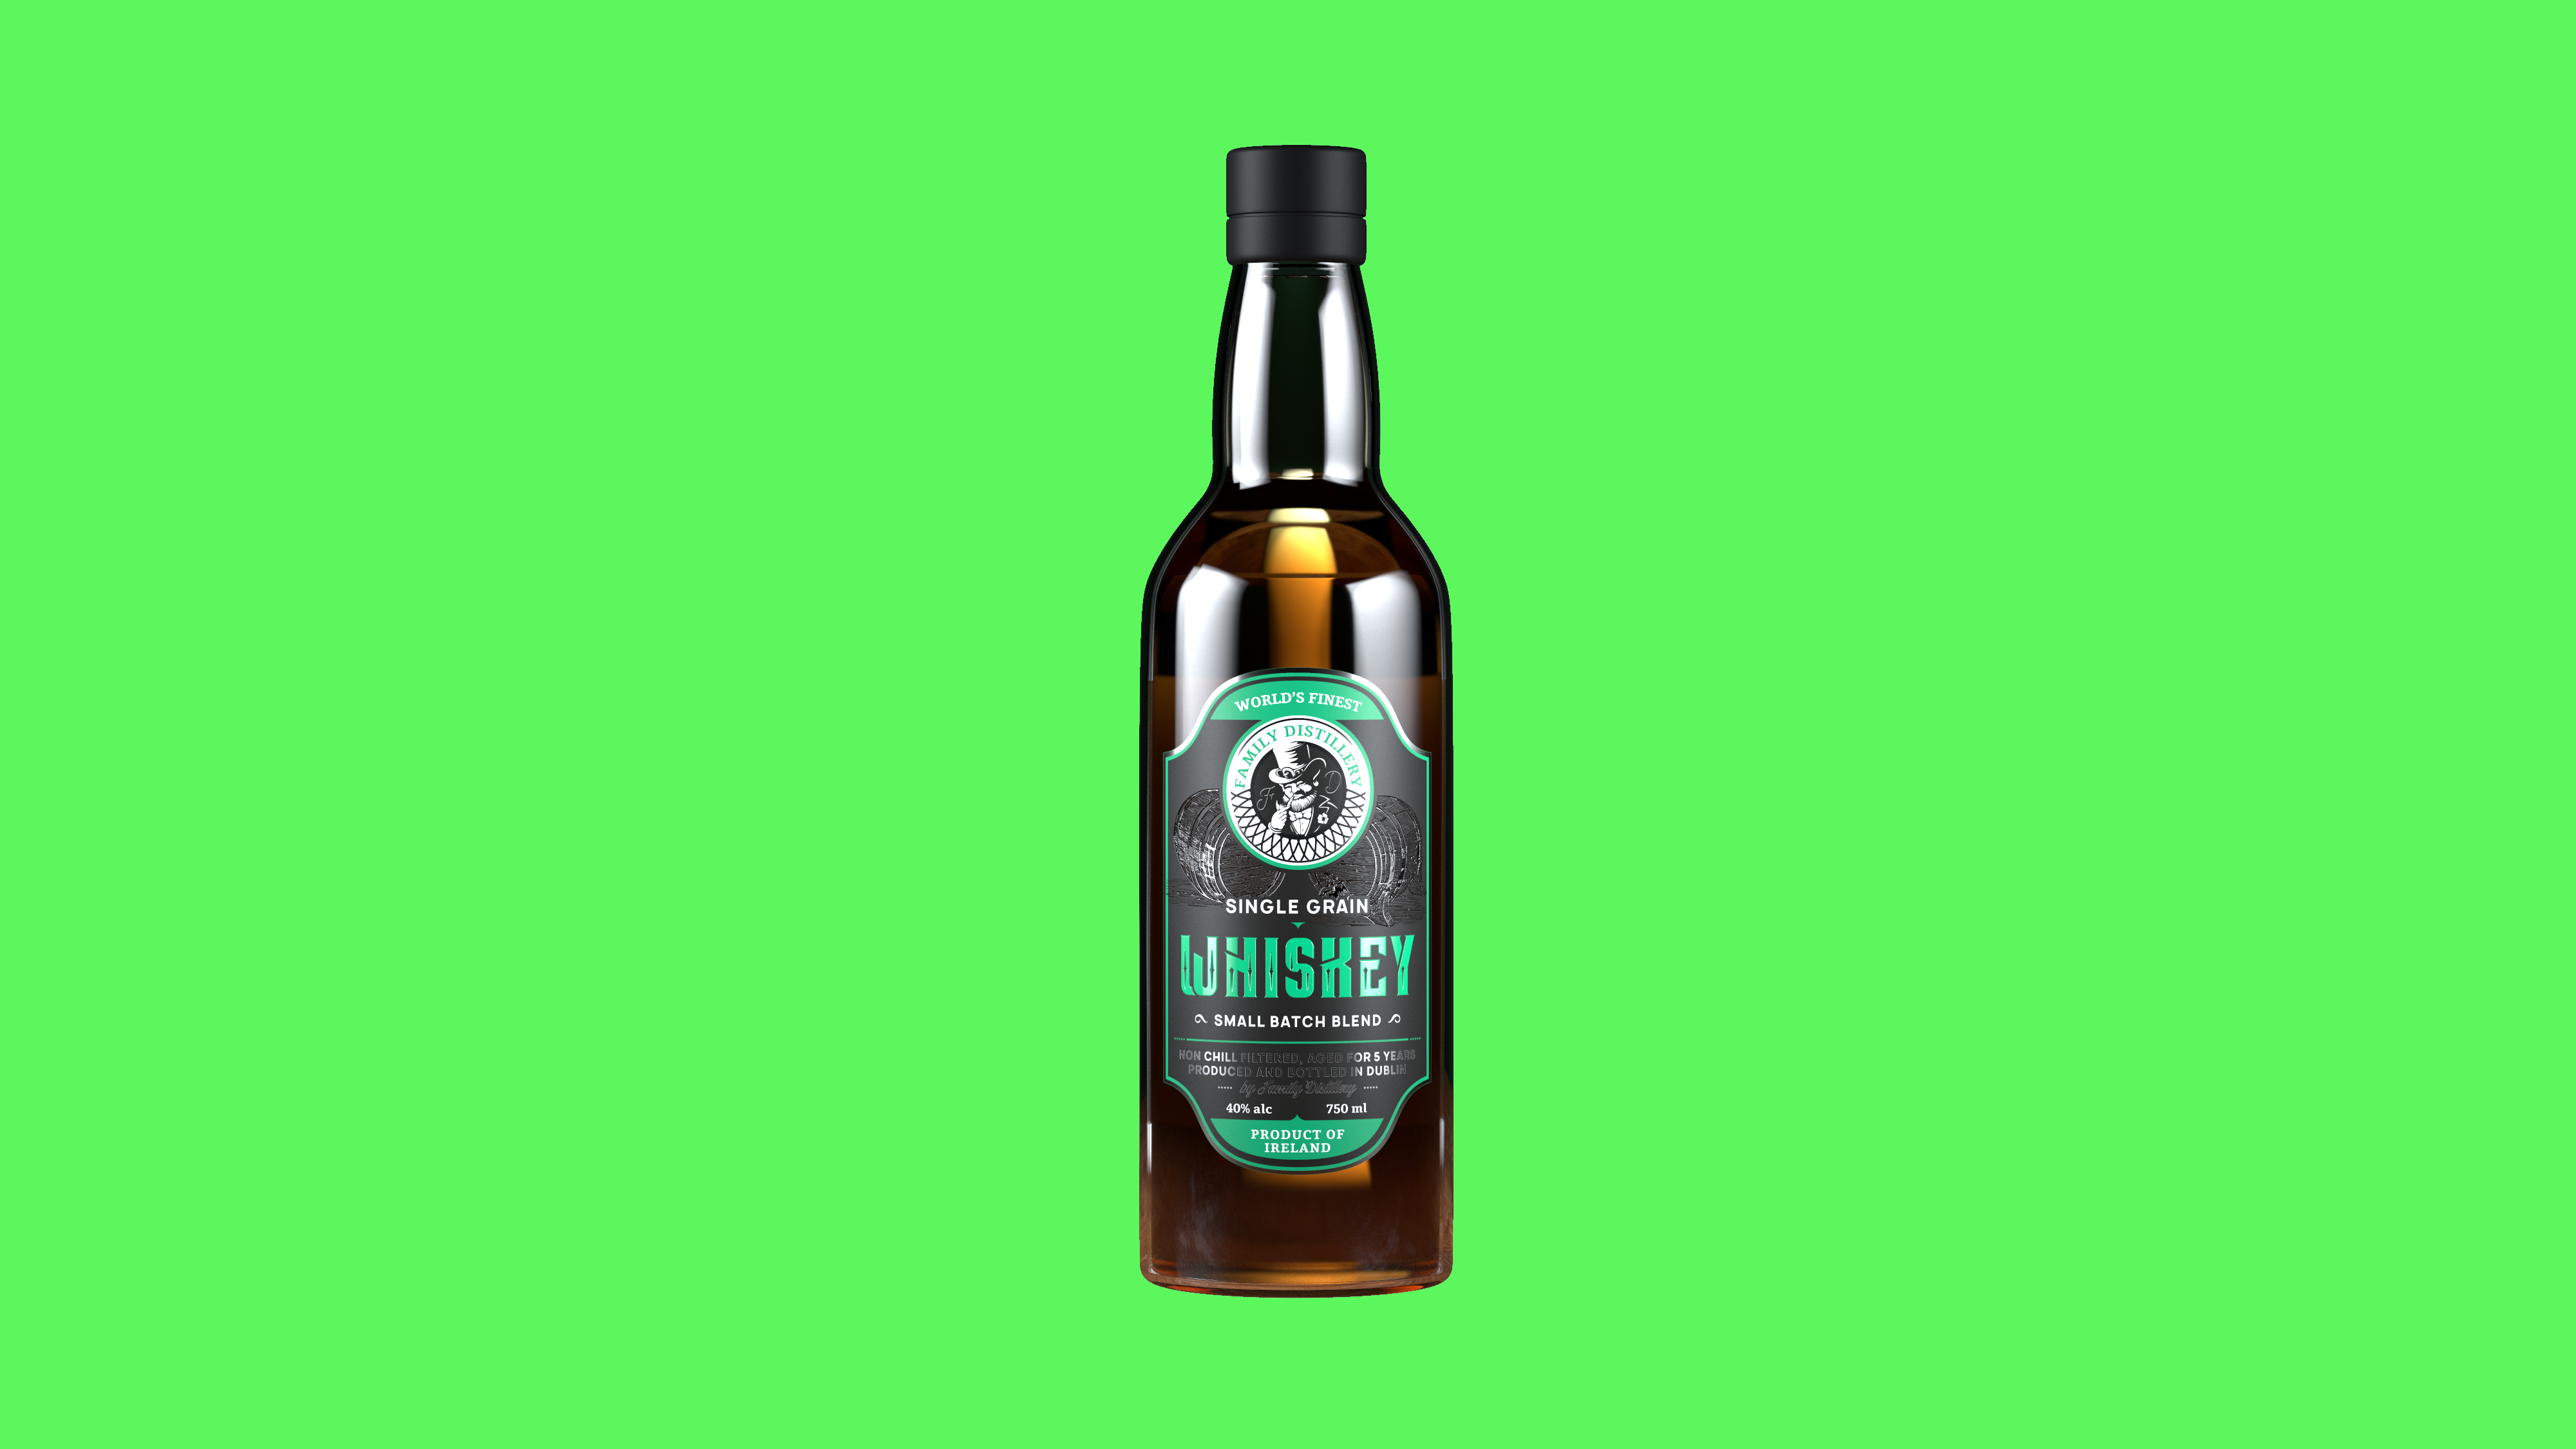 Whisky_Bottle